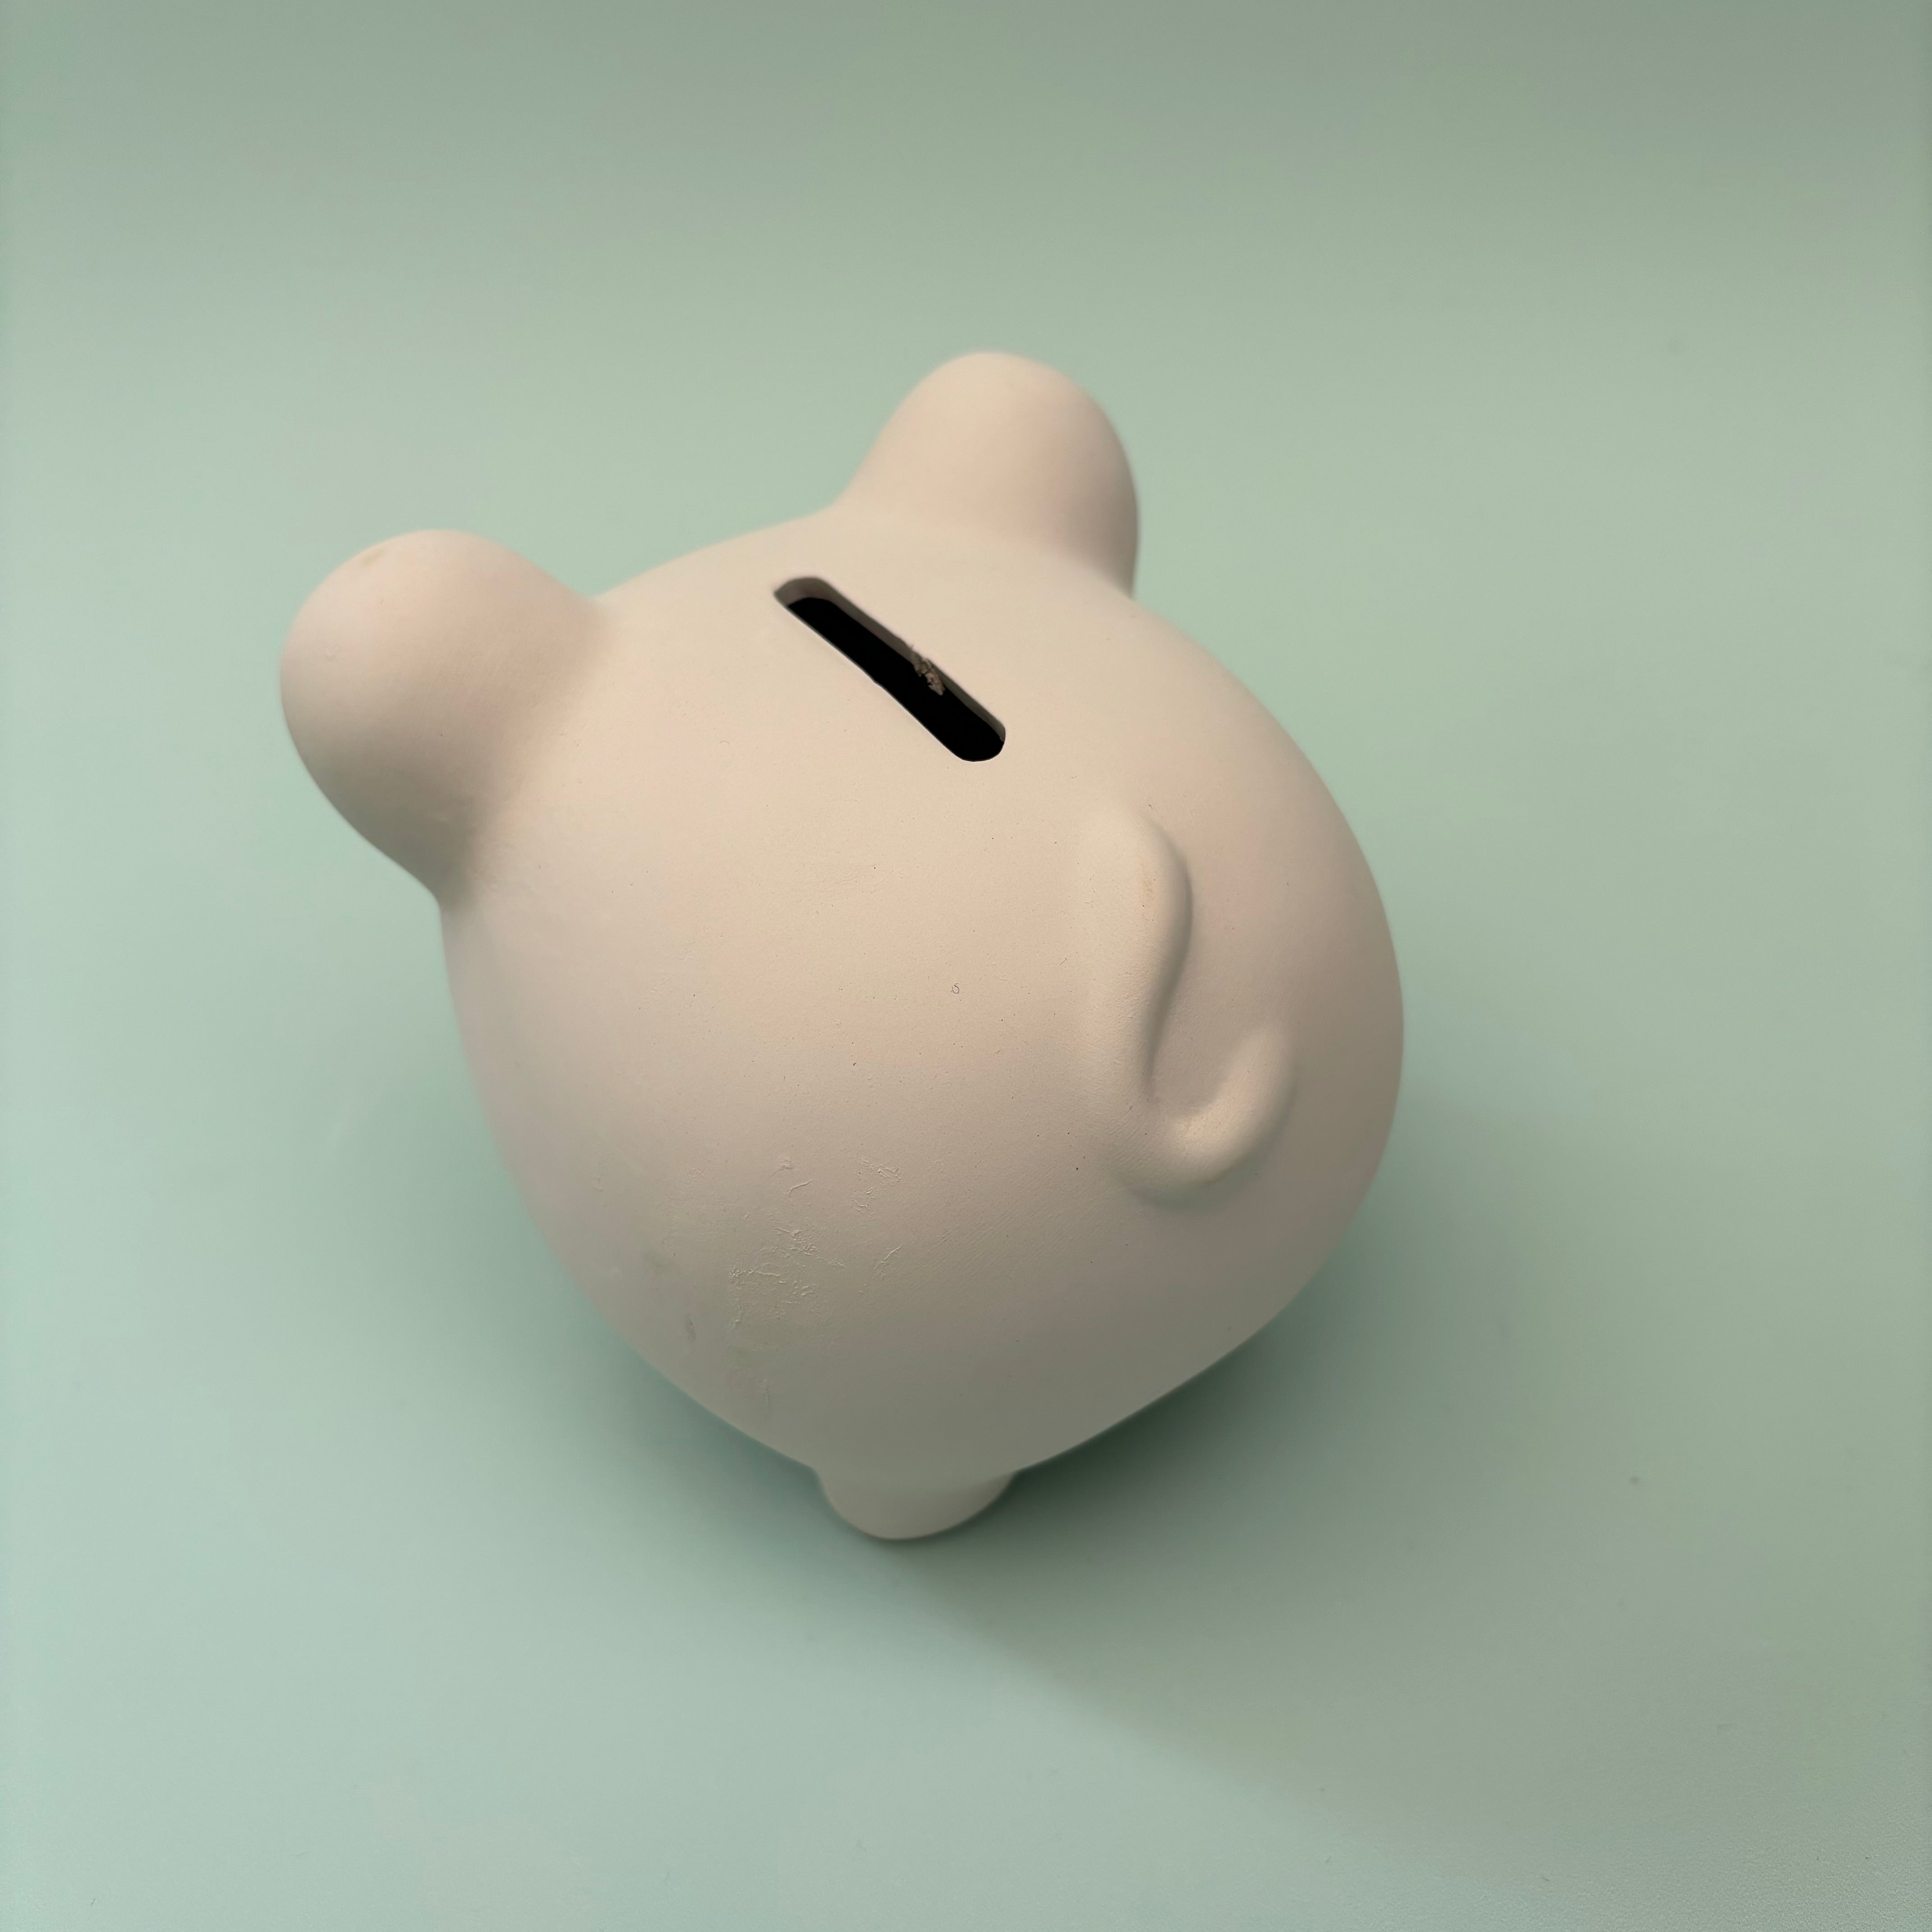 Piggy Bank - PaintPott